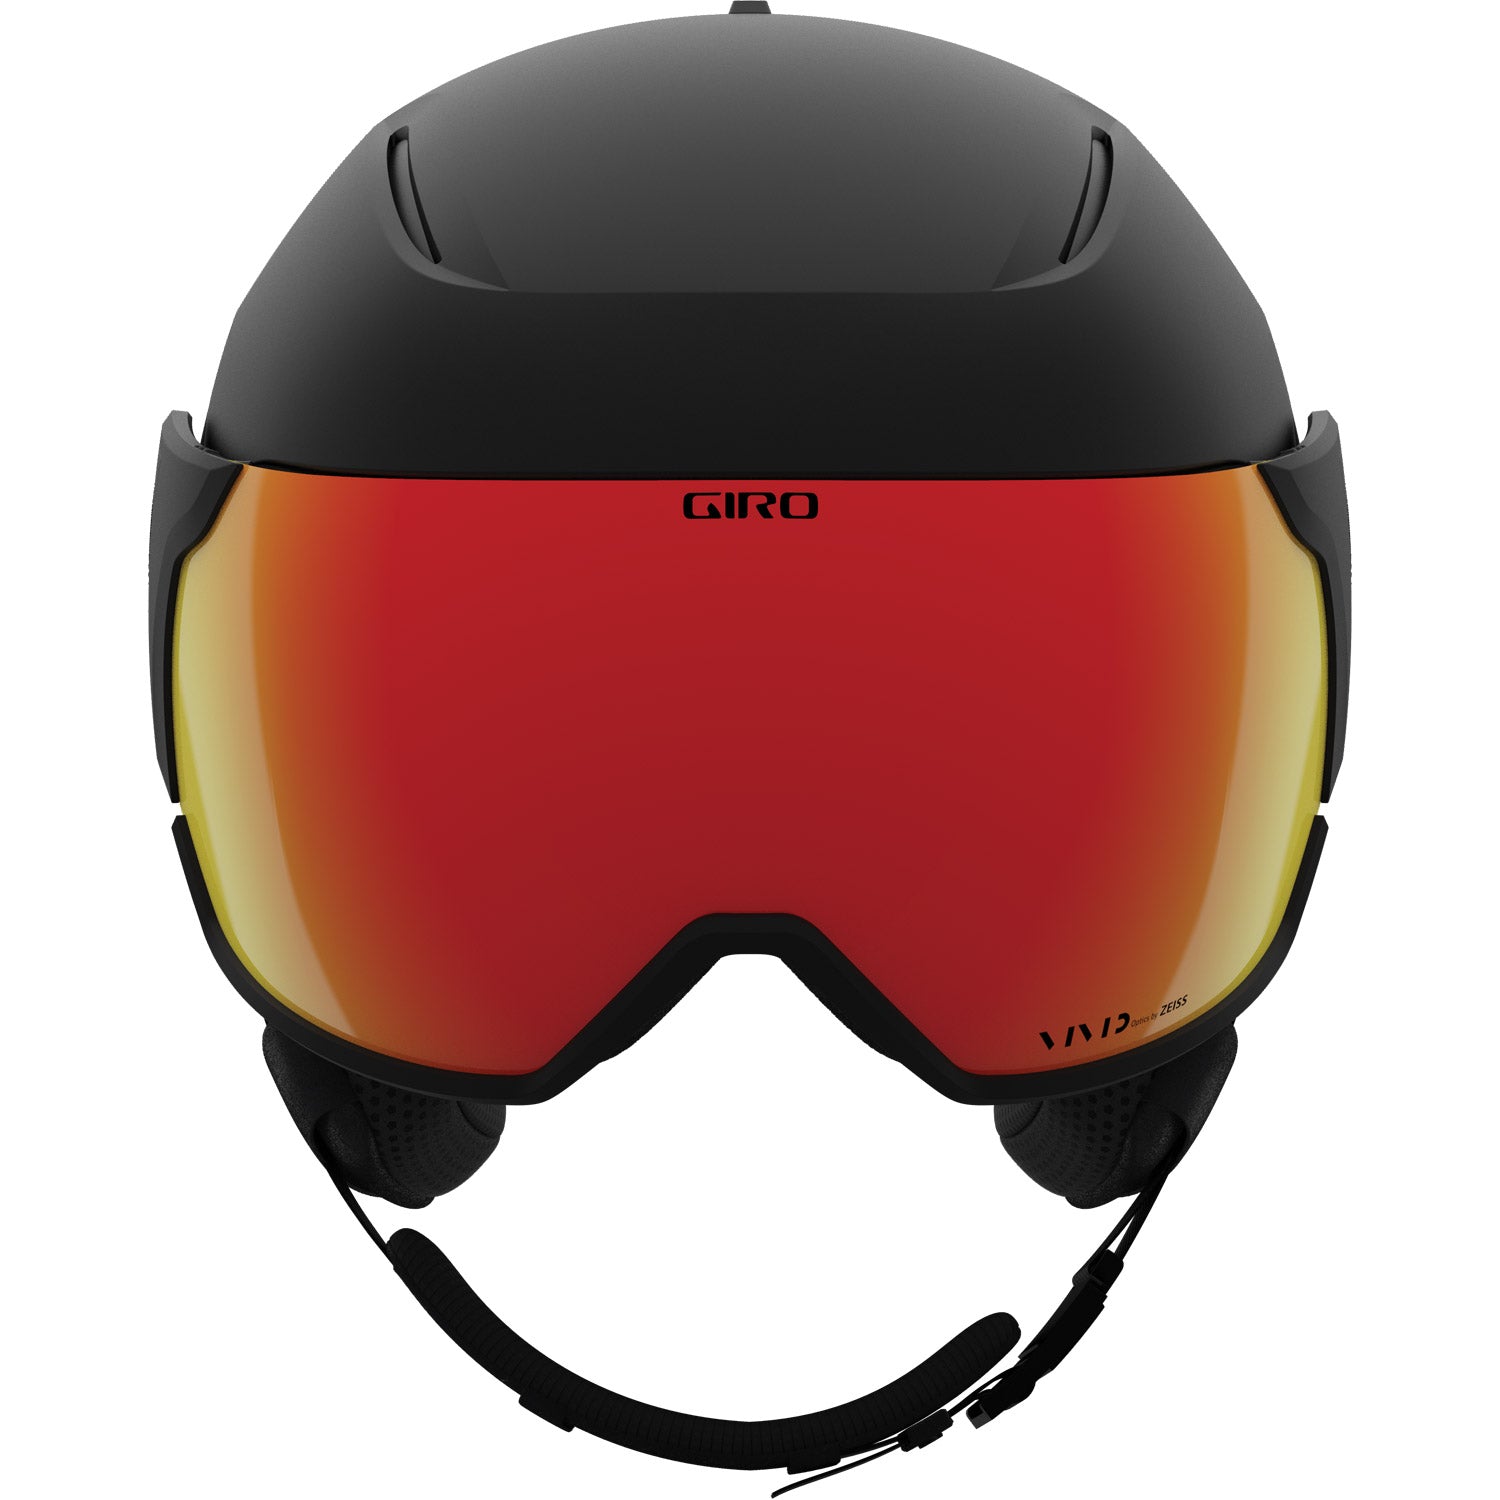 Orbit Mips Snow Helmet